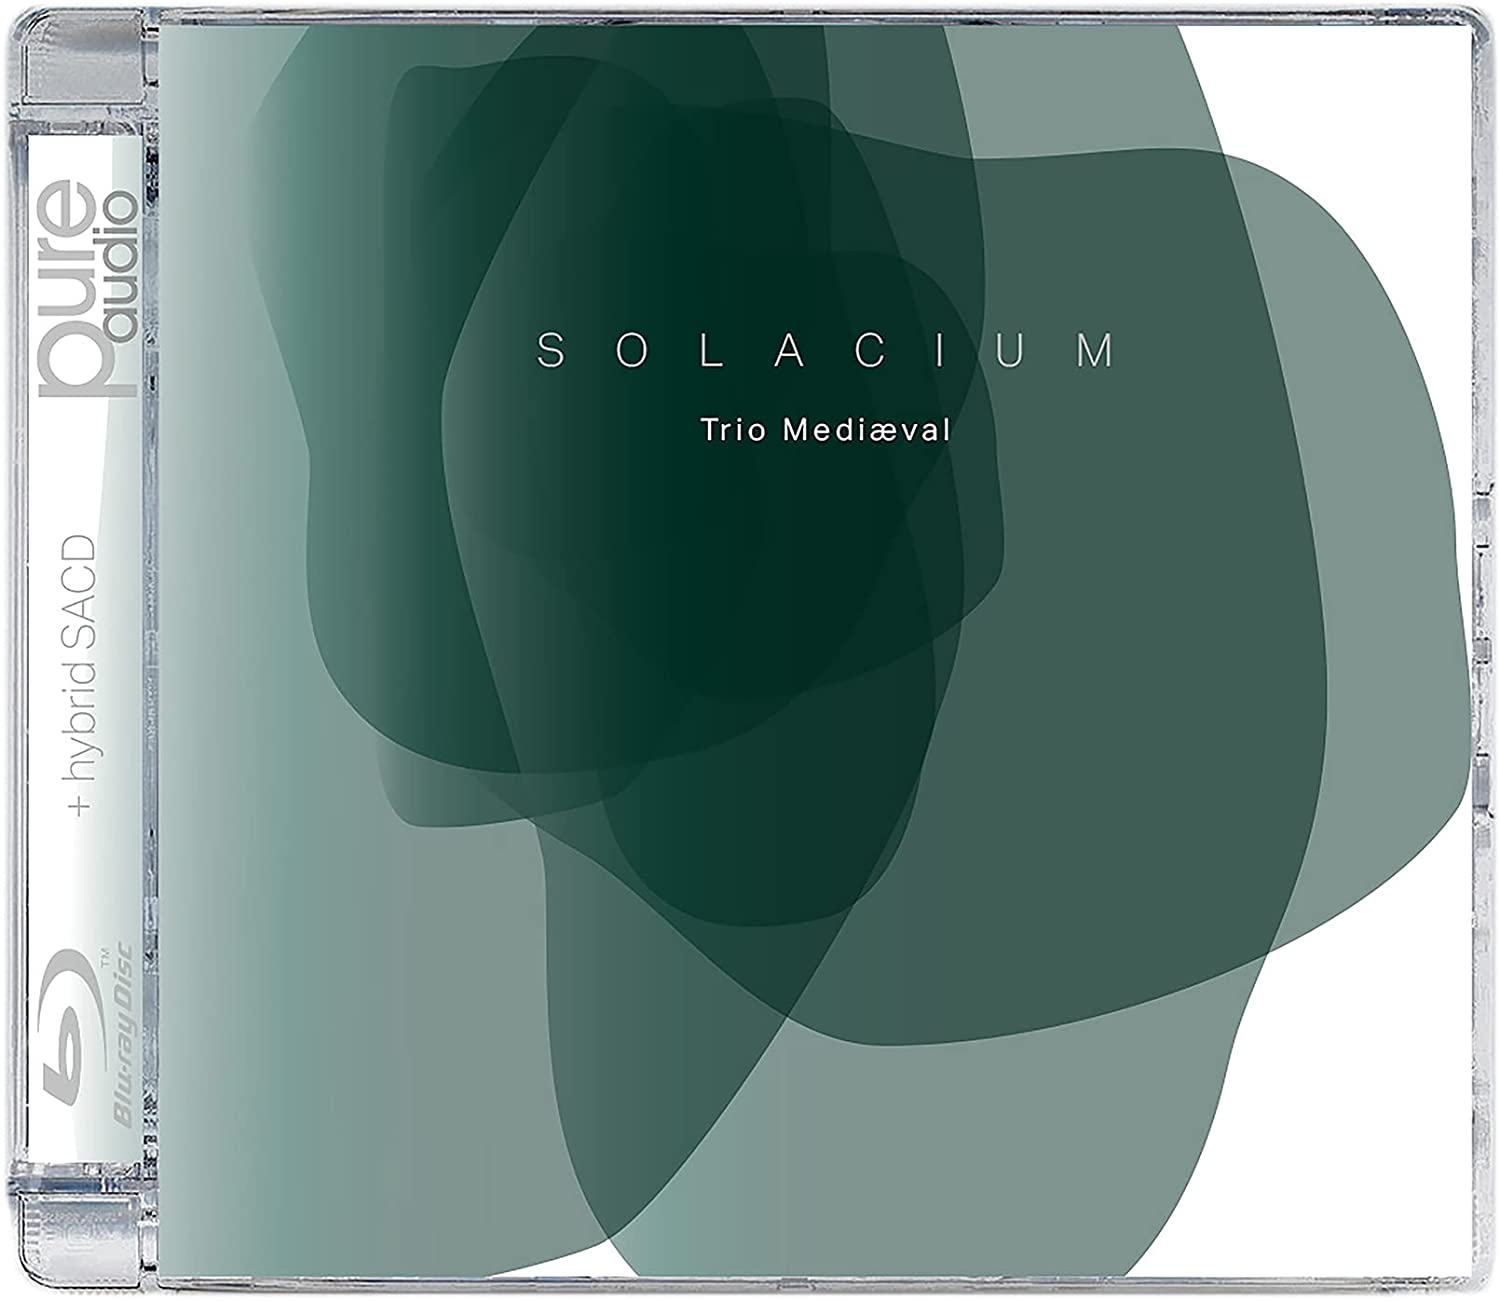 Audio Cd Trio Mediaeval: Solacium NUOVO SIGILLATO, EDIZIONE DEL 13/08/2021 SUBITO DISPONIBILE